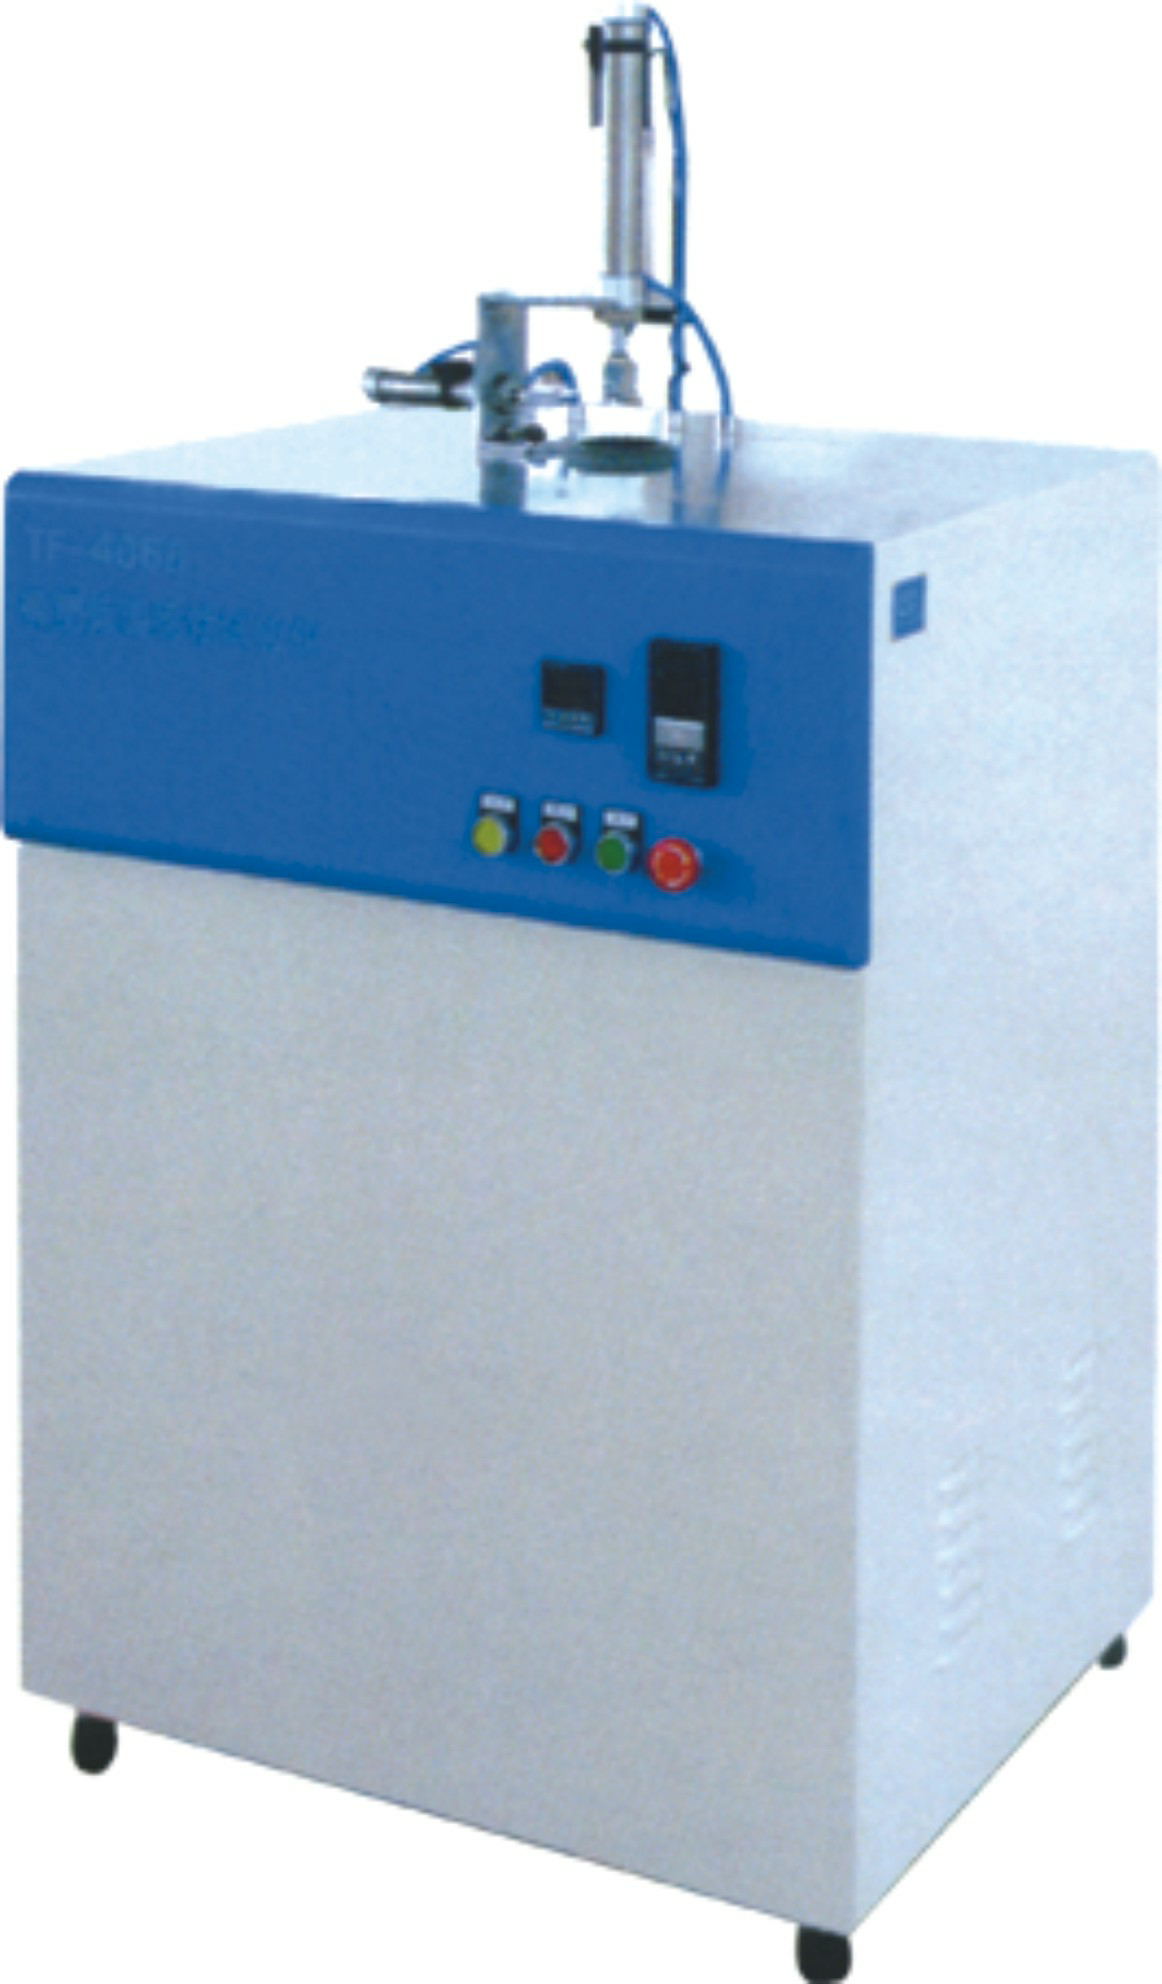 硫化橡胶脆性温度测定仪